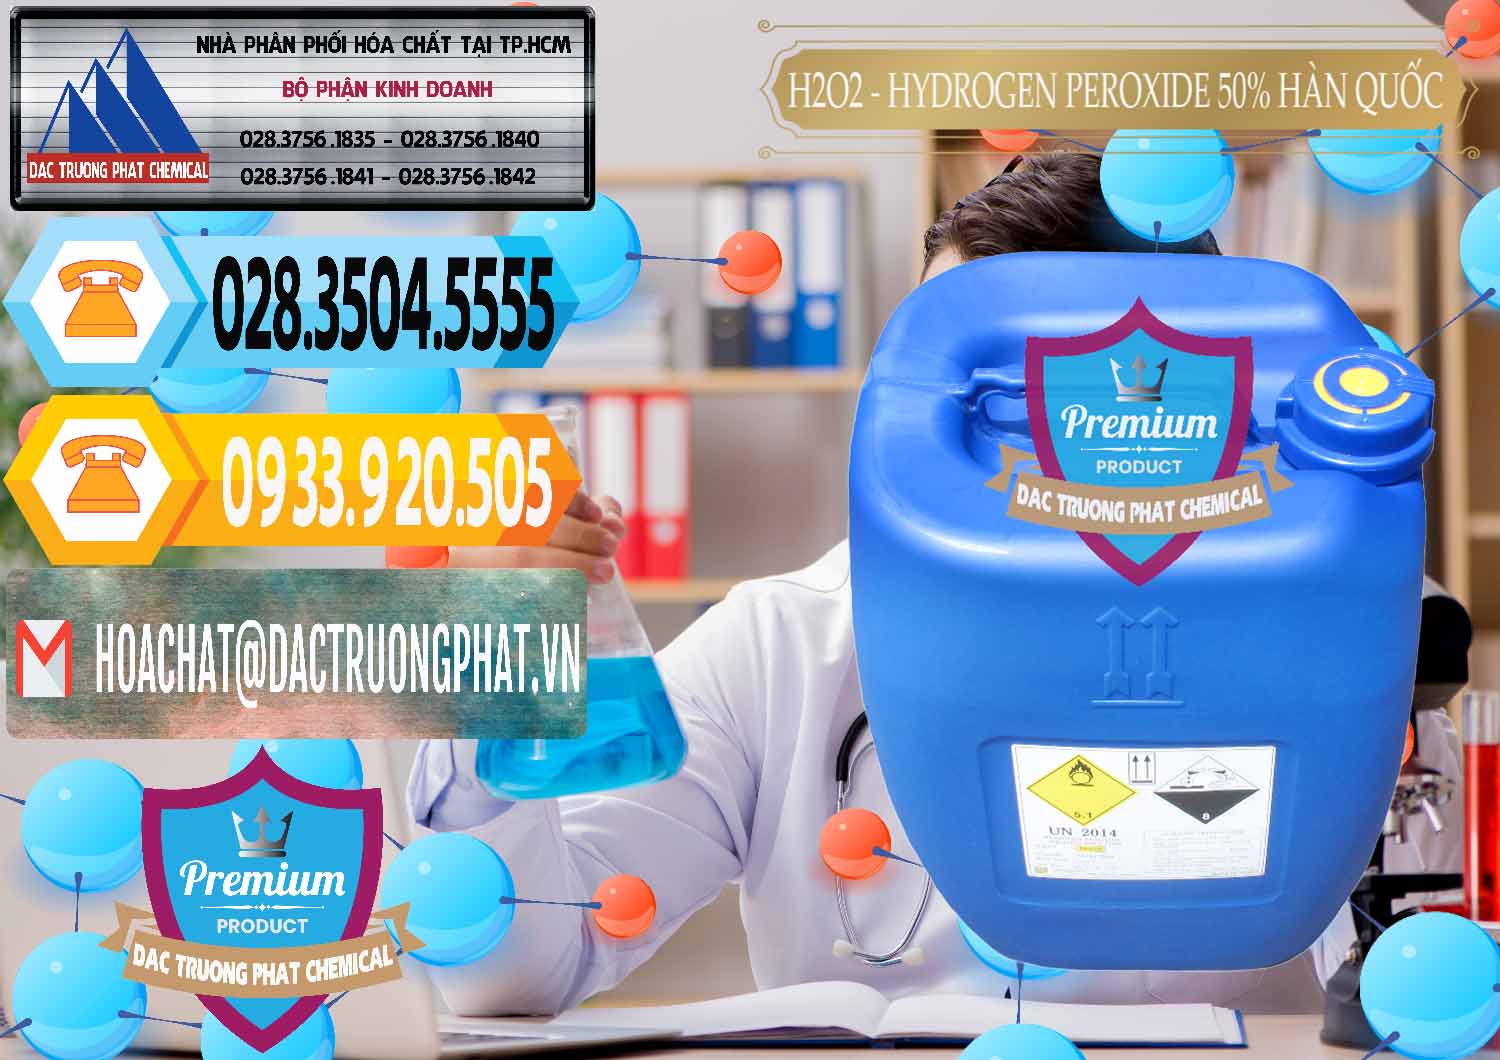 Chuyên kinh doanh & bán H2O2 - Hydrogen Peroxide 50% Taekwang Hàn Quốc Korea - 0071 - Cty chuyên nhập khẩu ( cung cấp ) hóa chất tại TP.HCM - hoachattayrua.net